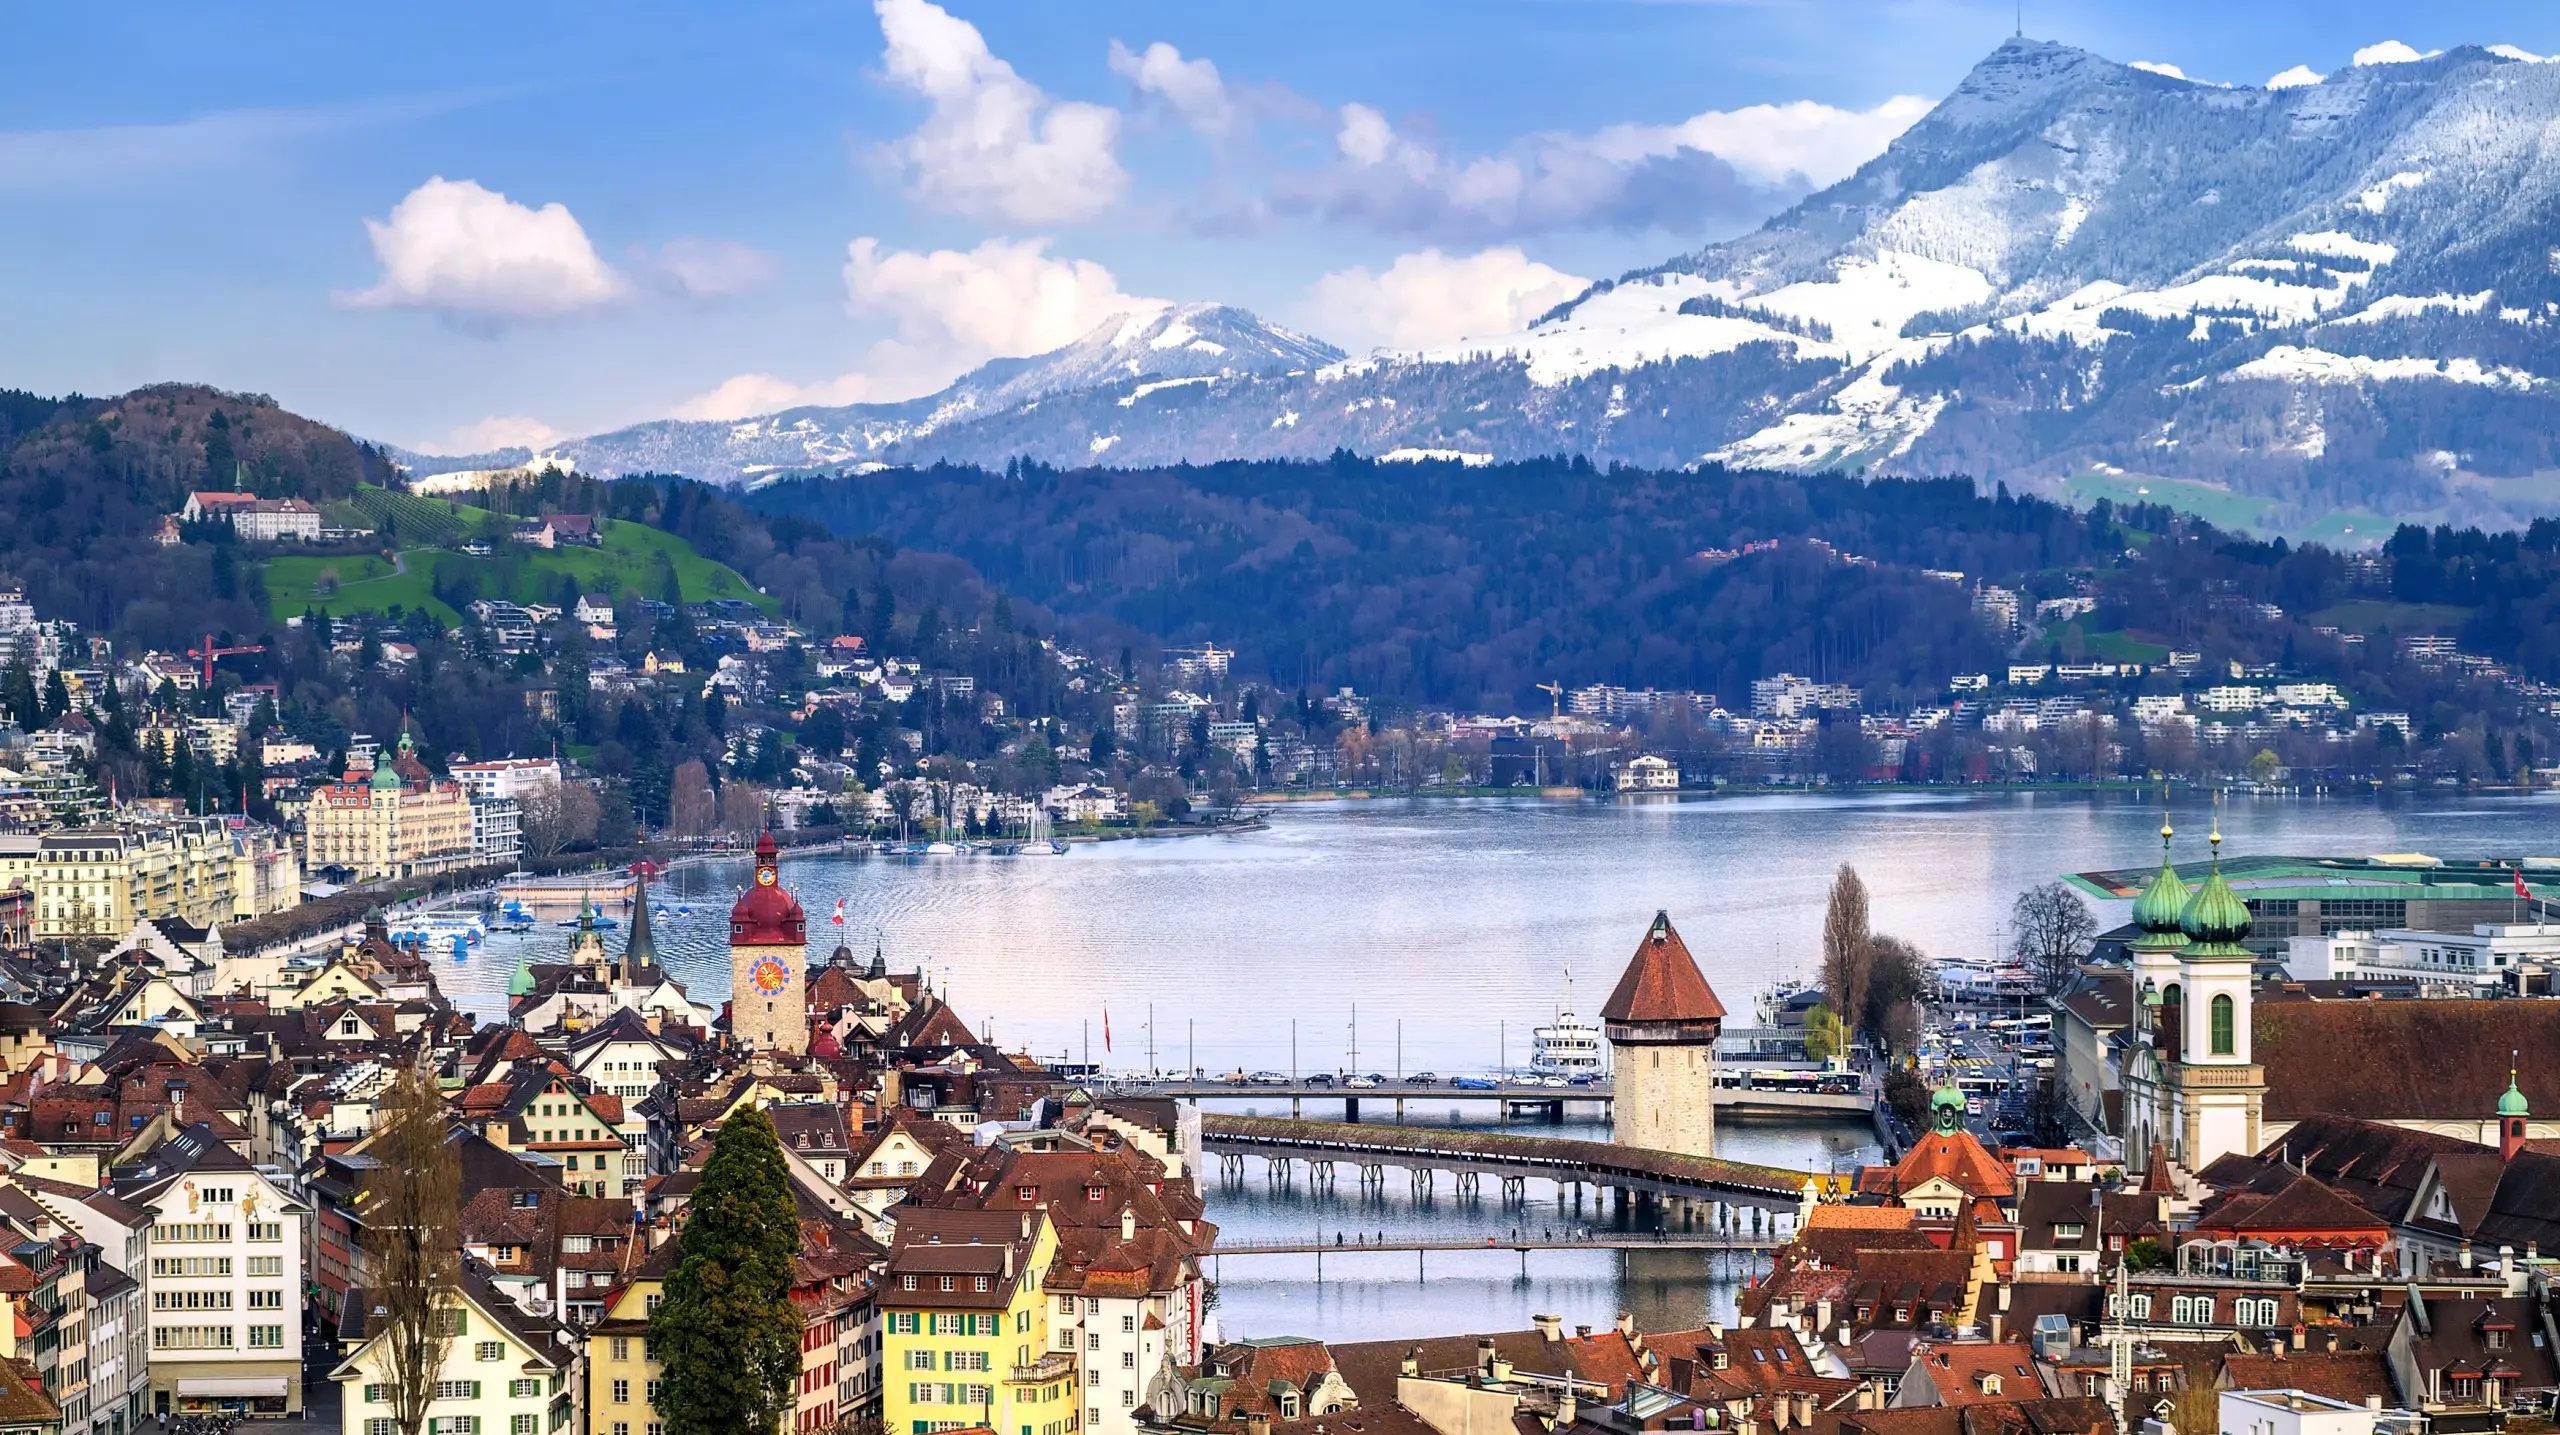 担心冬天停电瑞士拟禁止电动车上路